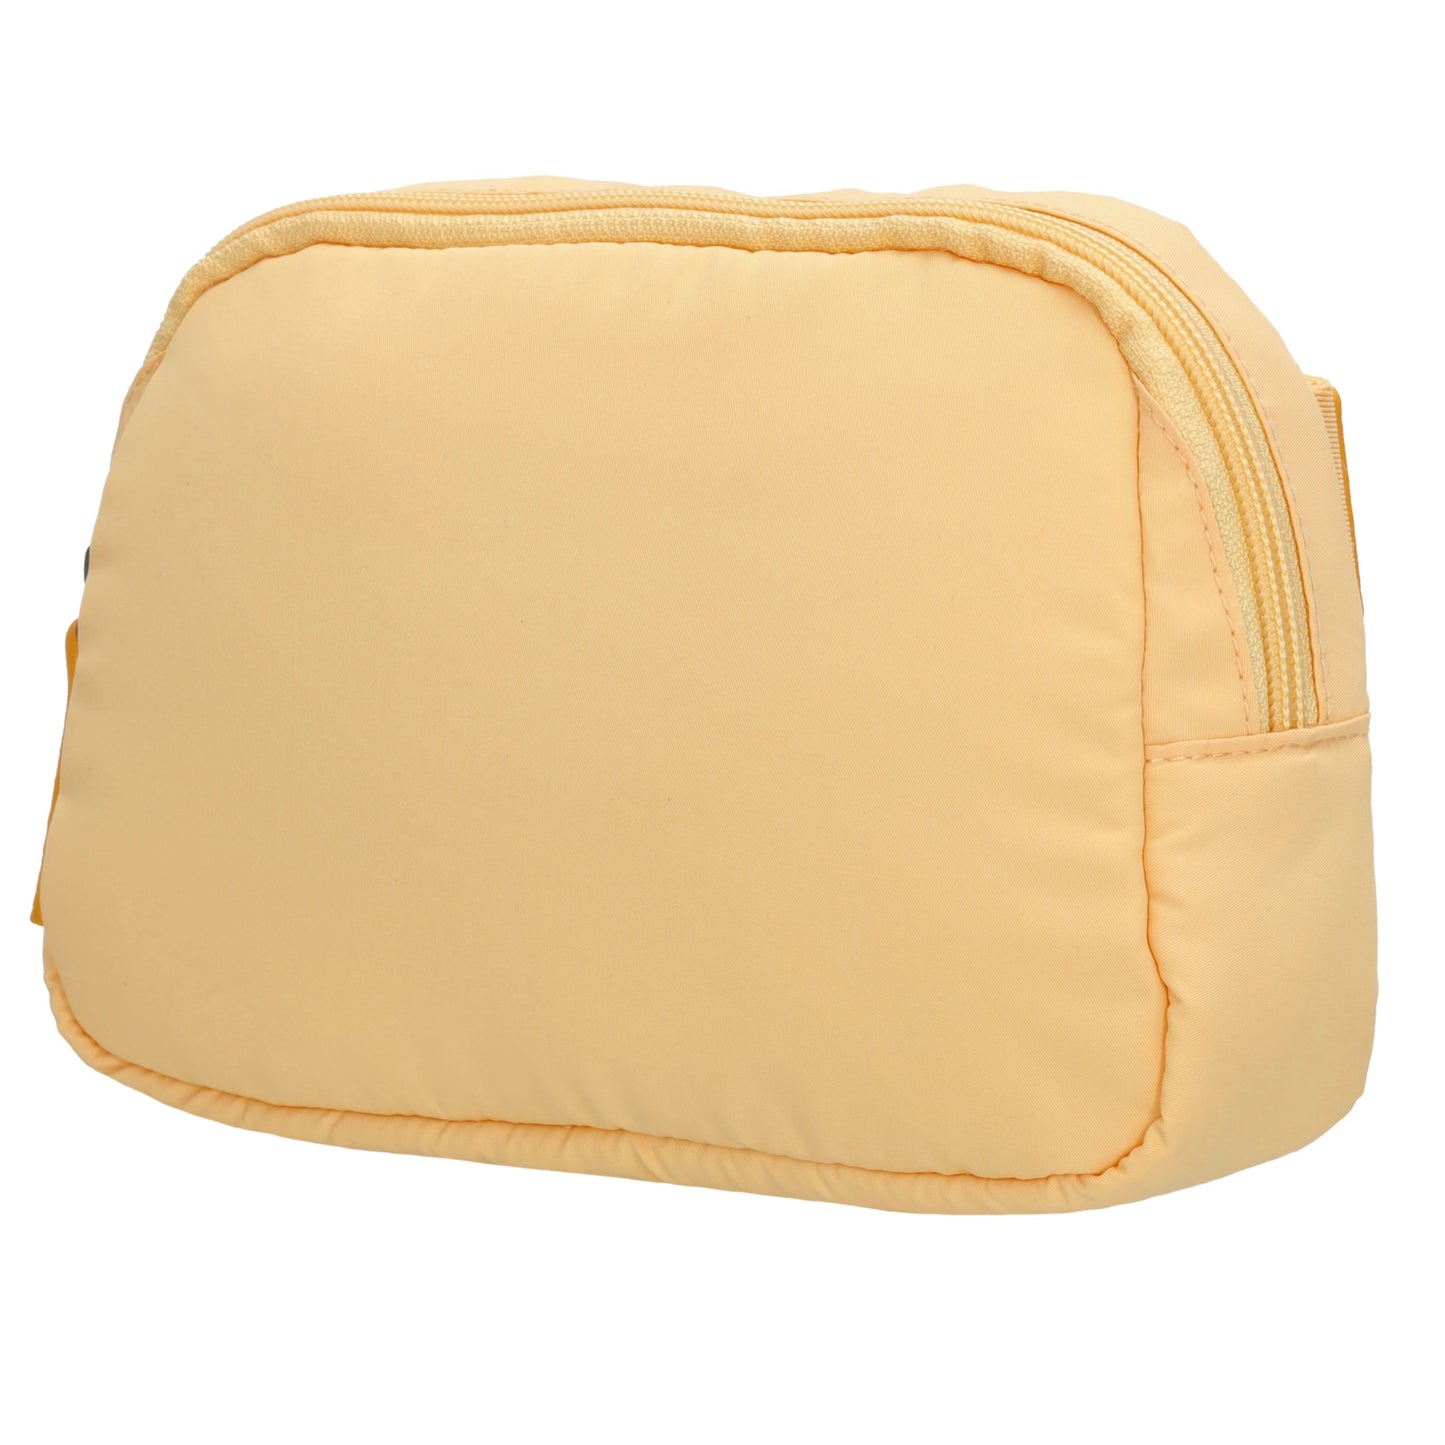 Bodybag|Gürteltasche 19,5 x 14cm in Gelb wattiert